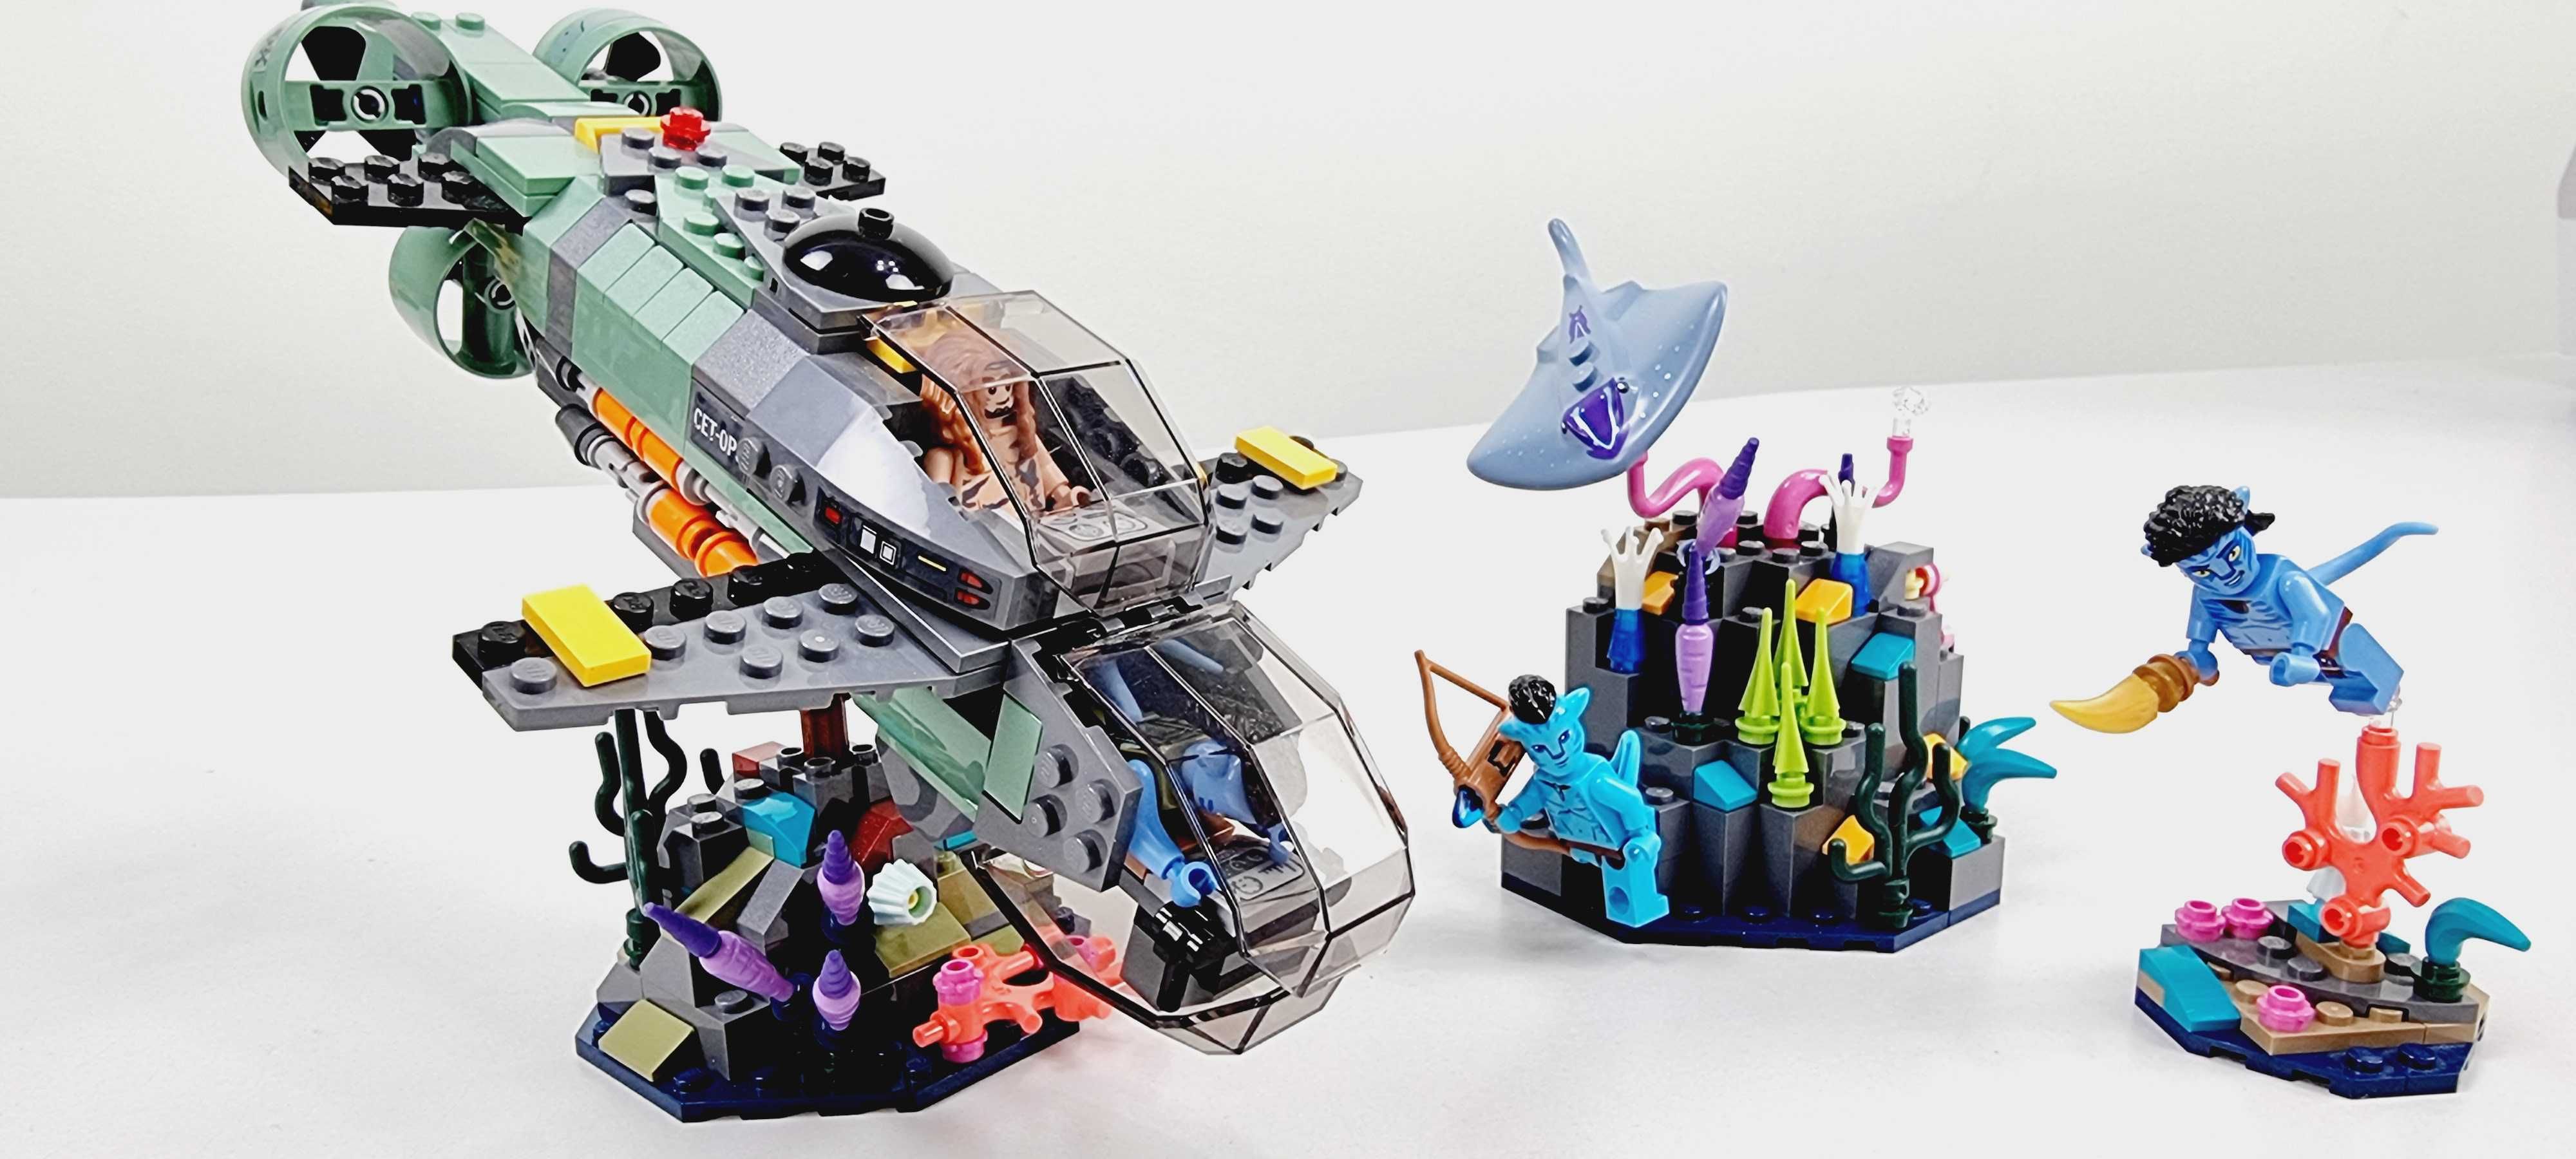 Конструктор LEGO Avatar Субмарина «Мако» Лего 75577